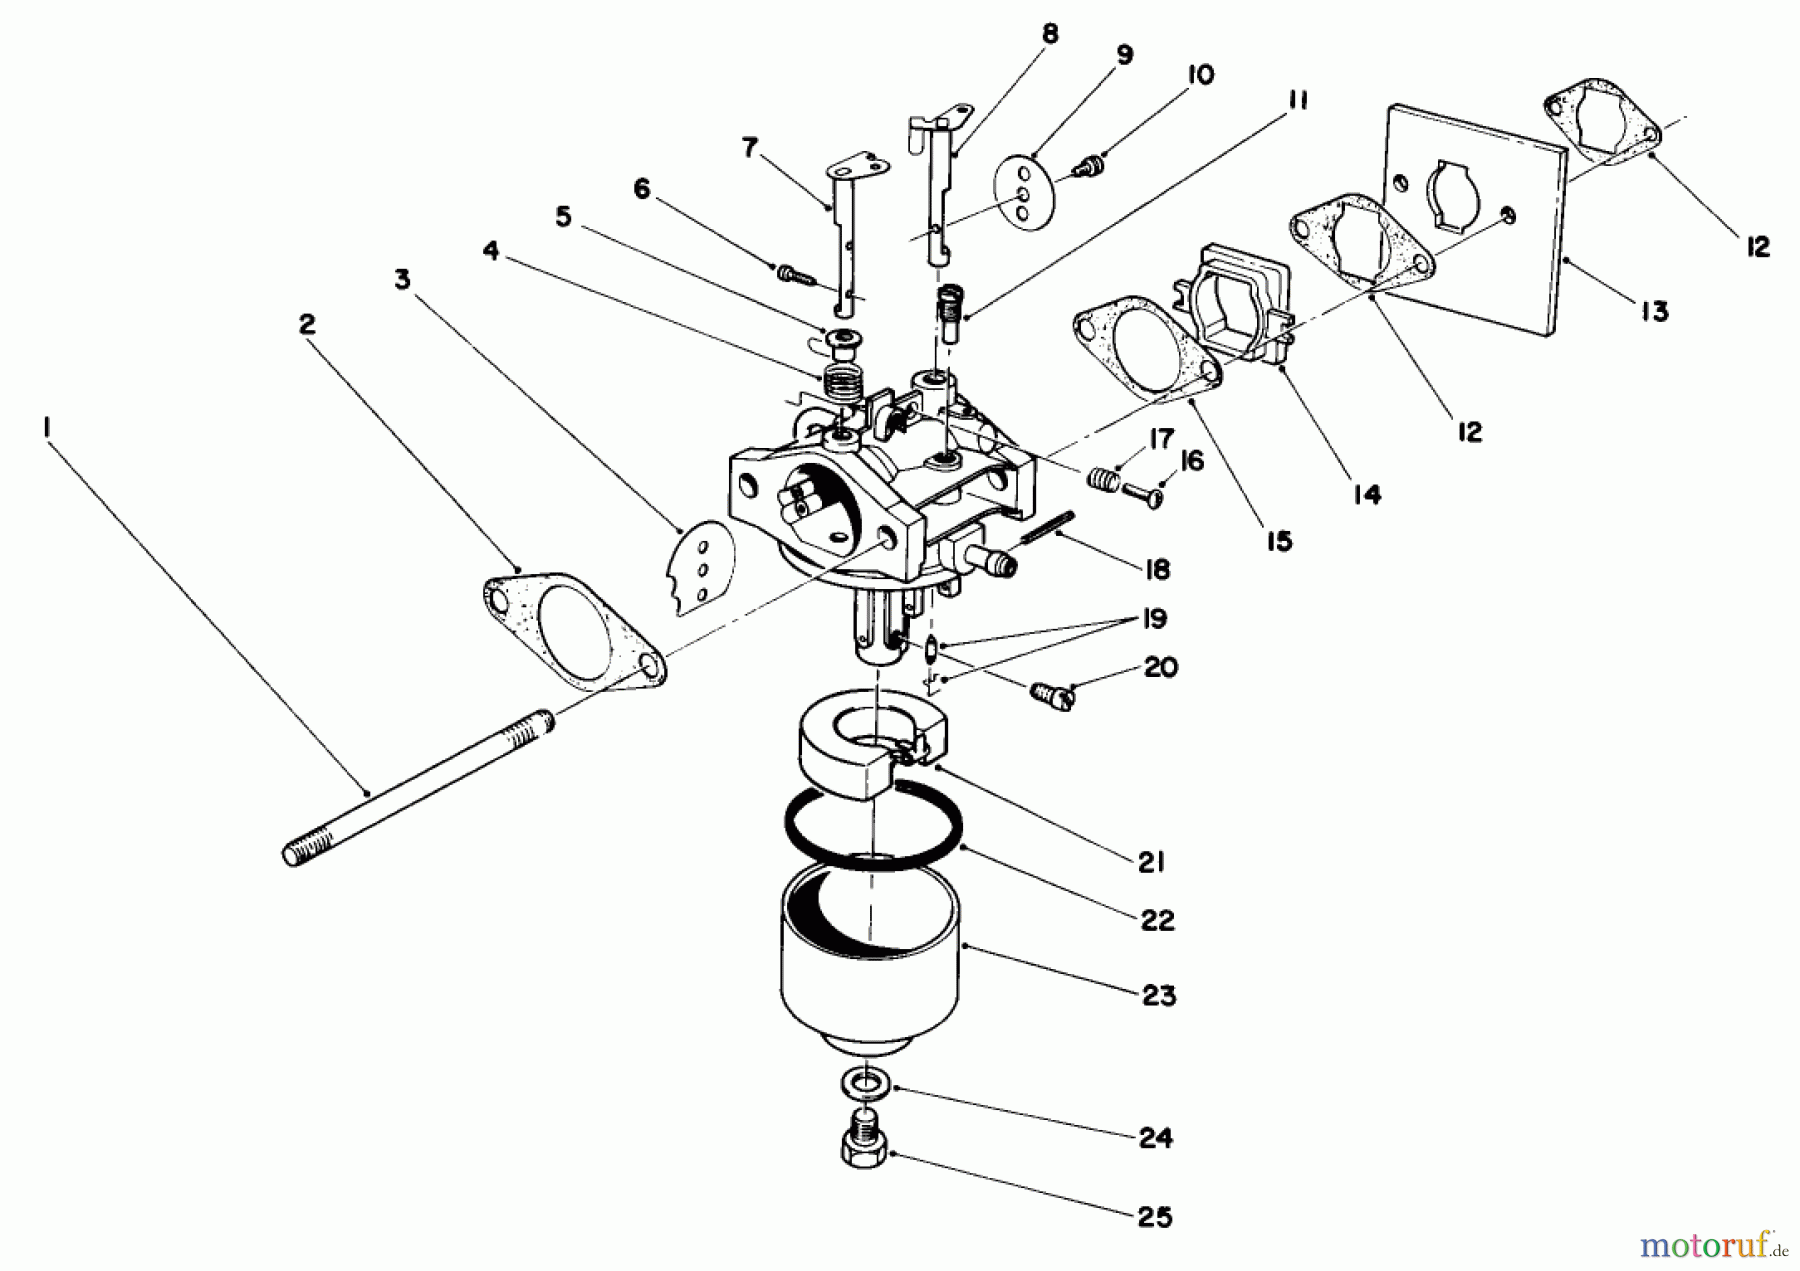  Toro Neu Mowers, Walk-Behind Seite 2 22035 - Toro Lawnmower, 1987 (7000001-7999999) ENGINE ASSEMBLY MODEL NO. 47PG6 #3